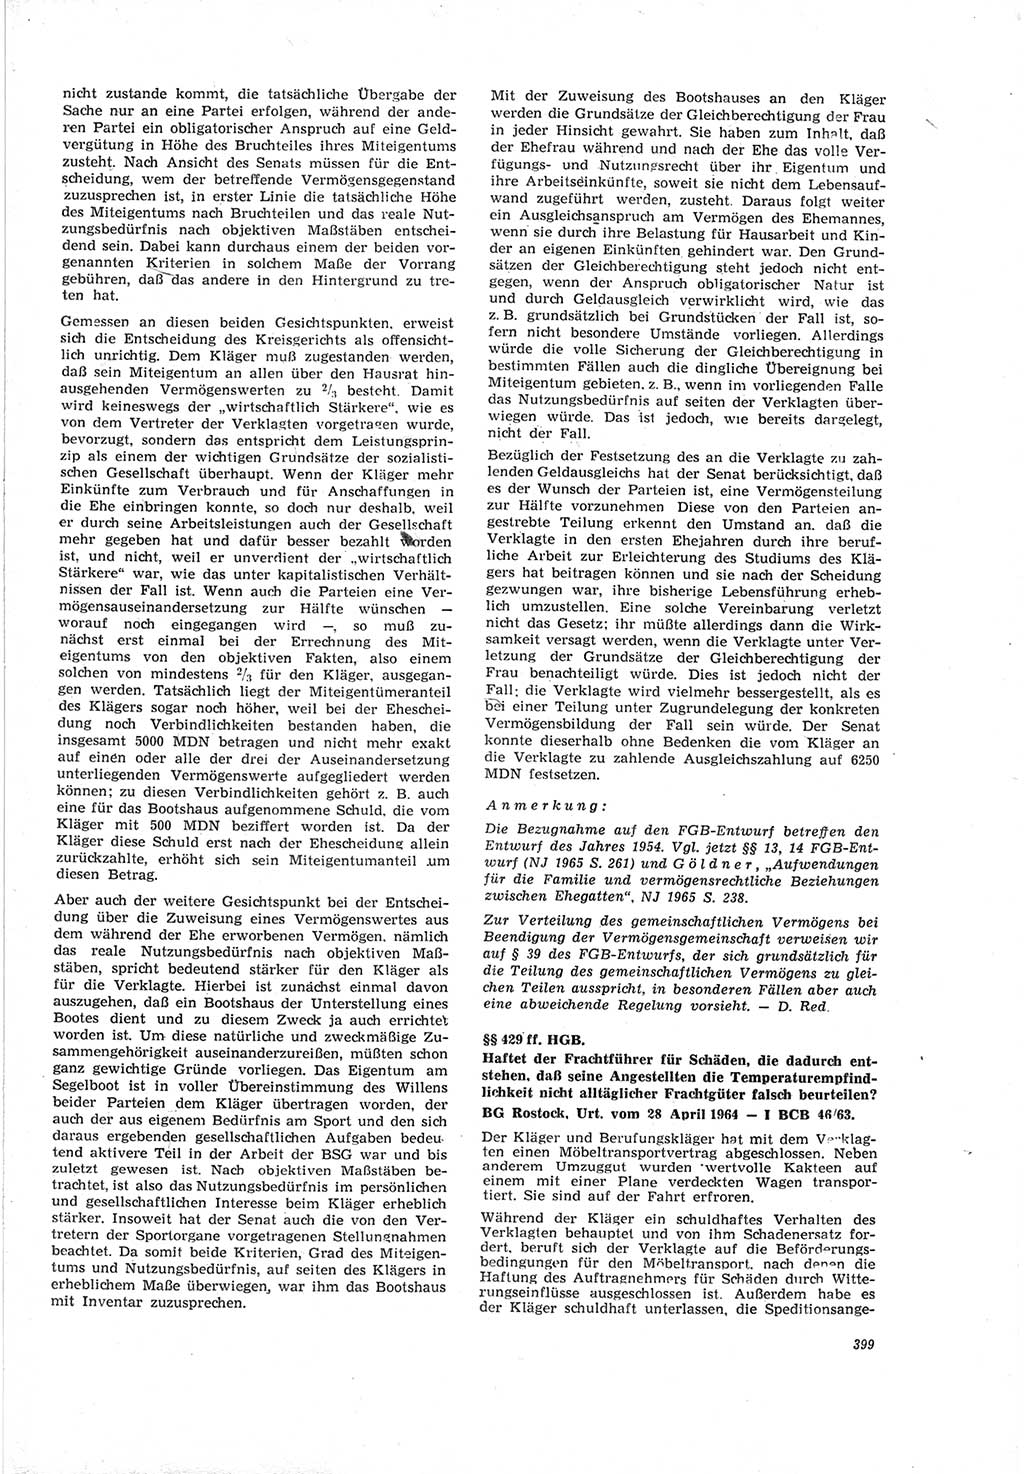 Neue Justiz (NJ), Zeitschrift für Recht und Rechtswissenschaft [Deutsche Demokratische Republik (DDR)], 19. Jahrgang 1965, Seite 399 (NJ DDR 1965, S. 399)